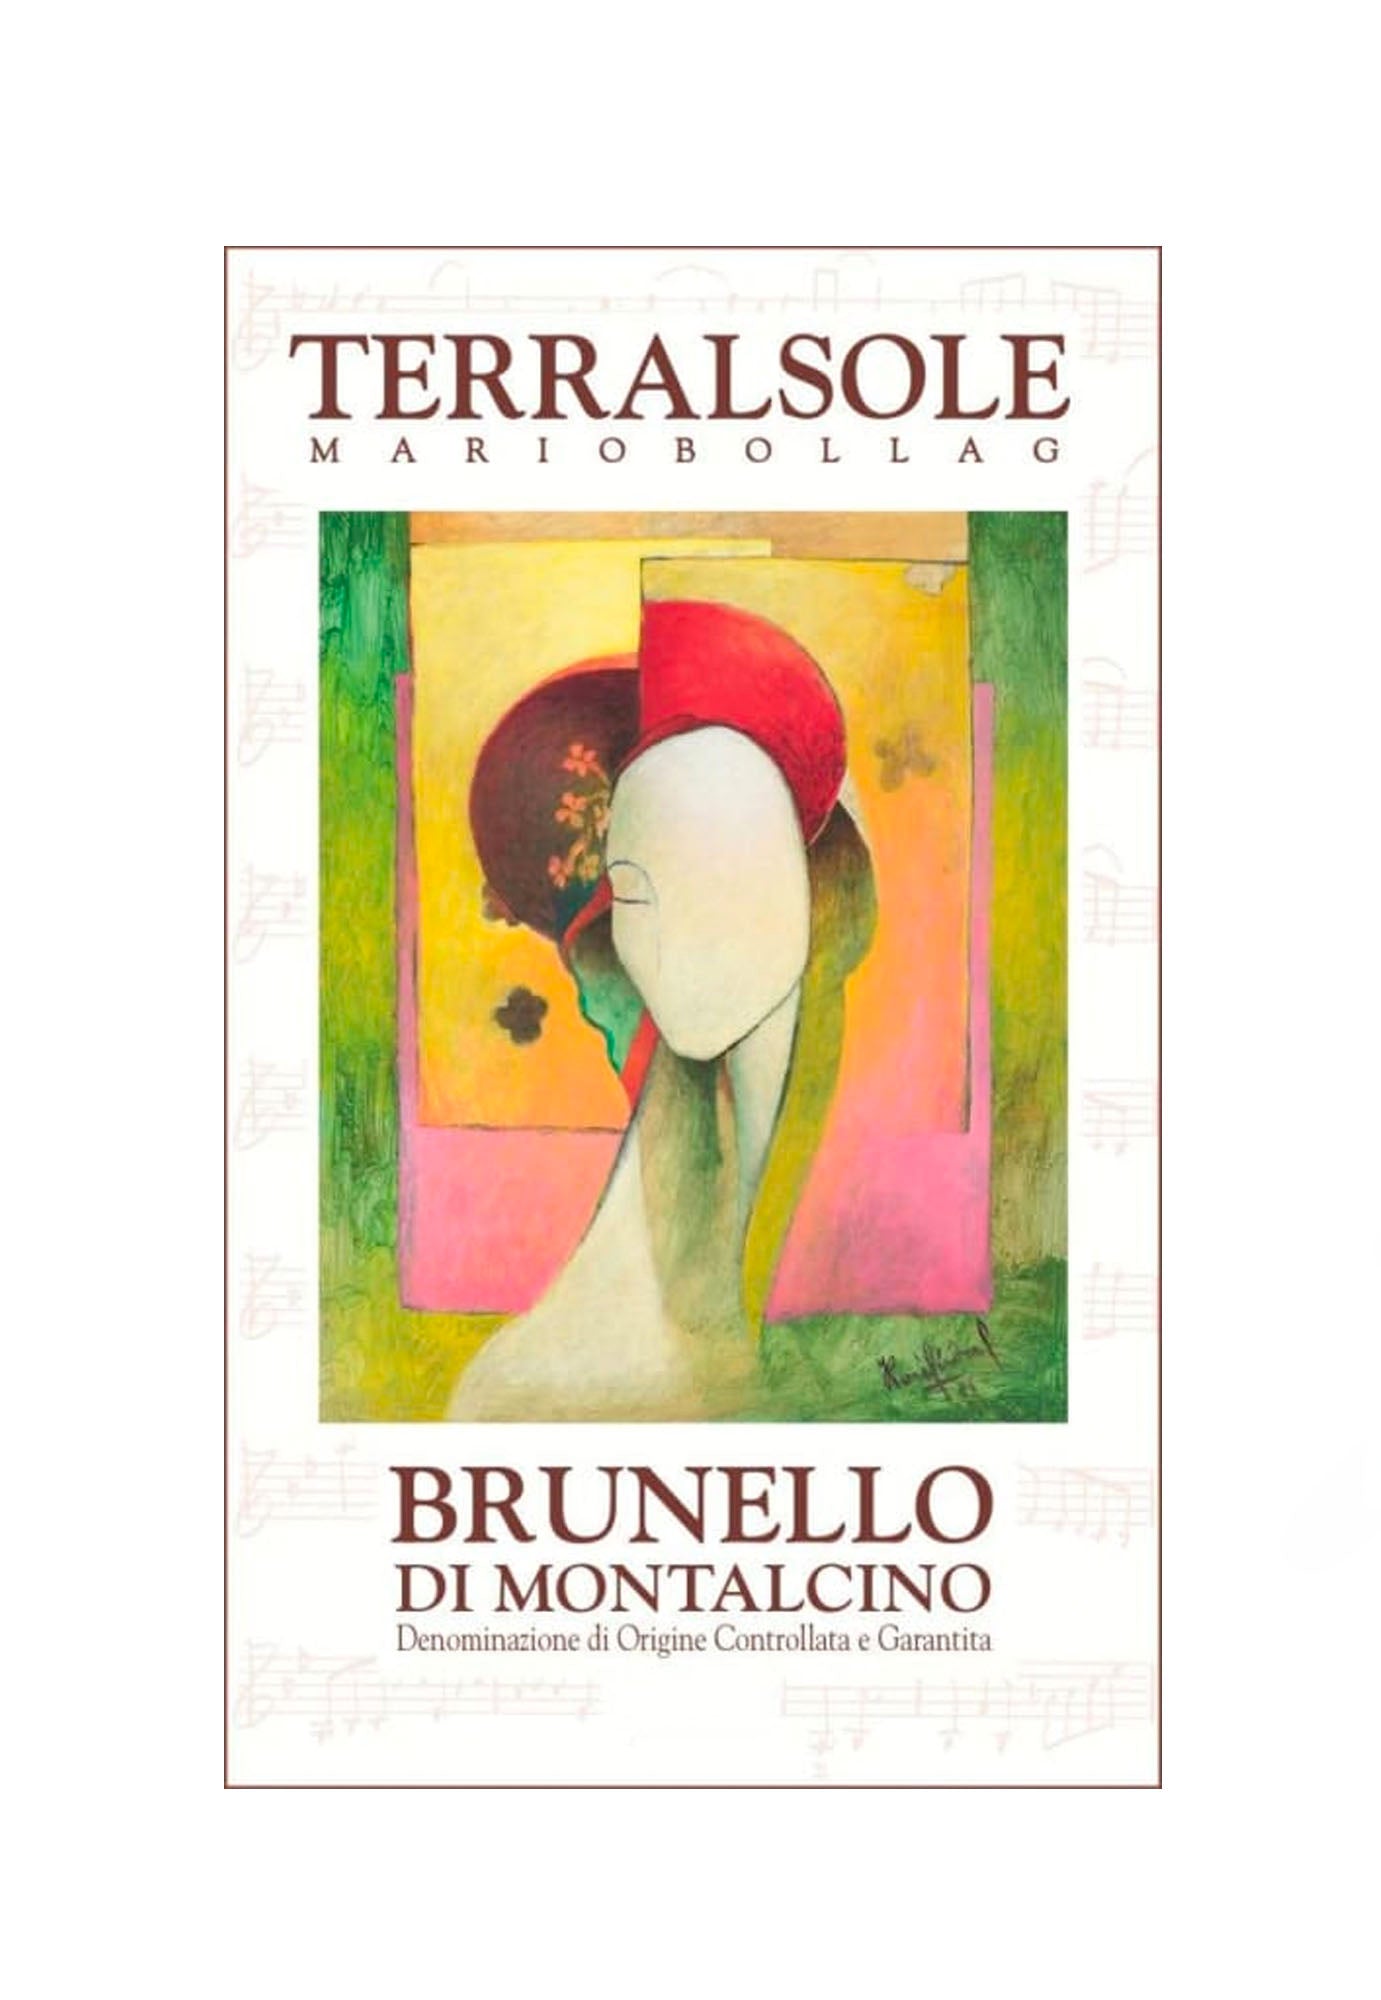 Terralsole Brunello di Montalcino 2015 - 1.5 Litre Bottle